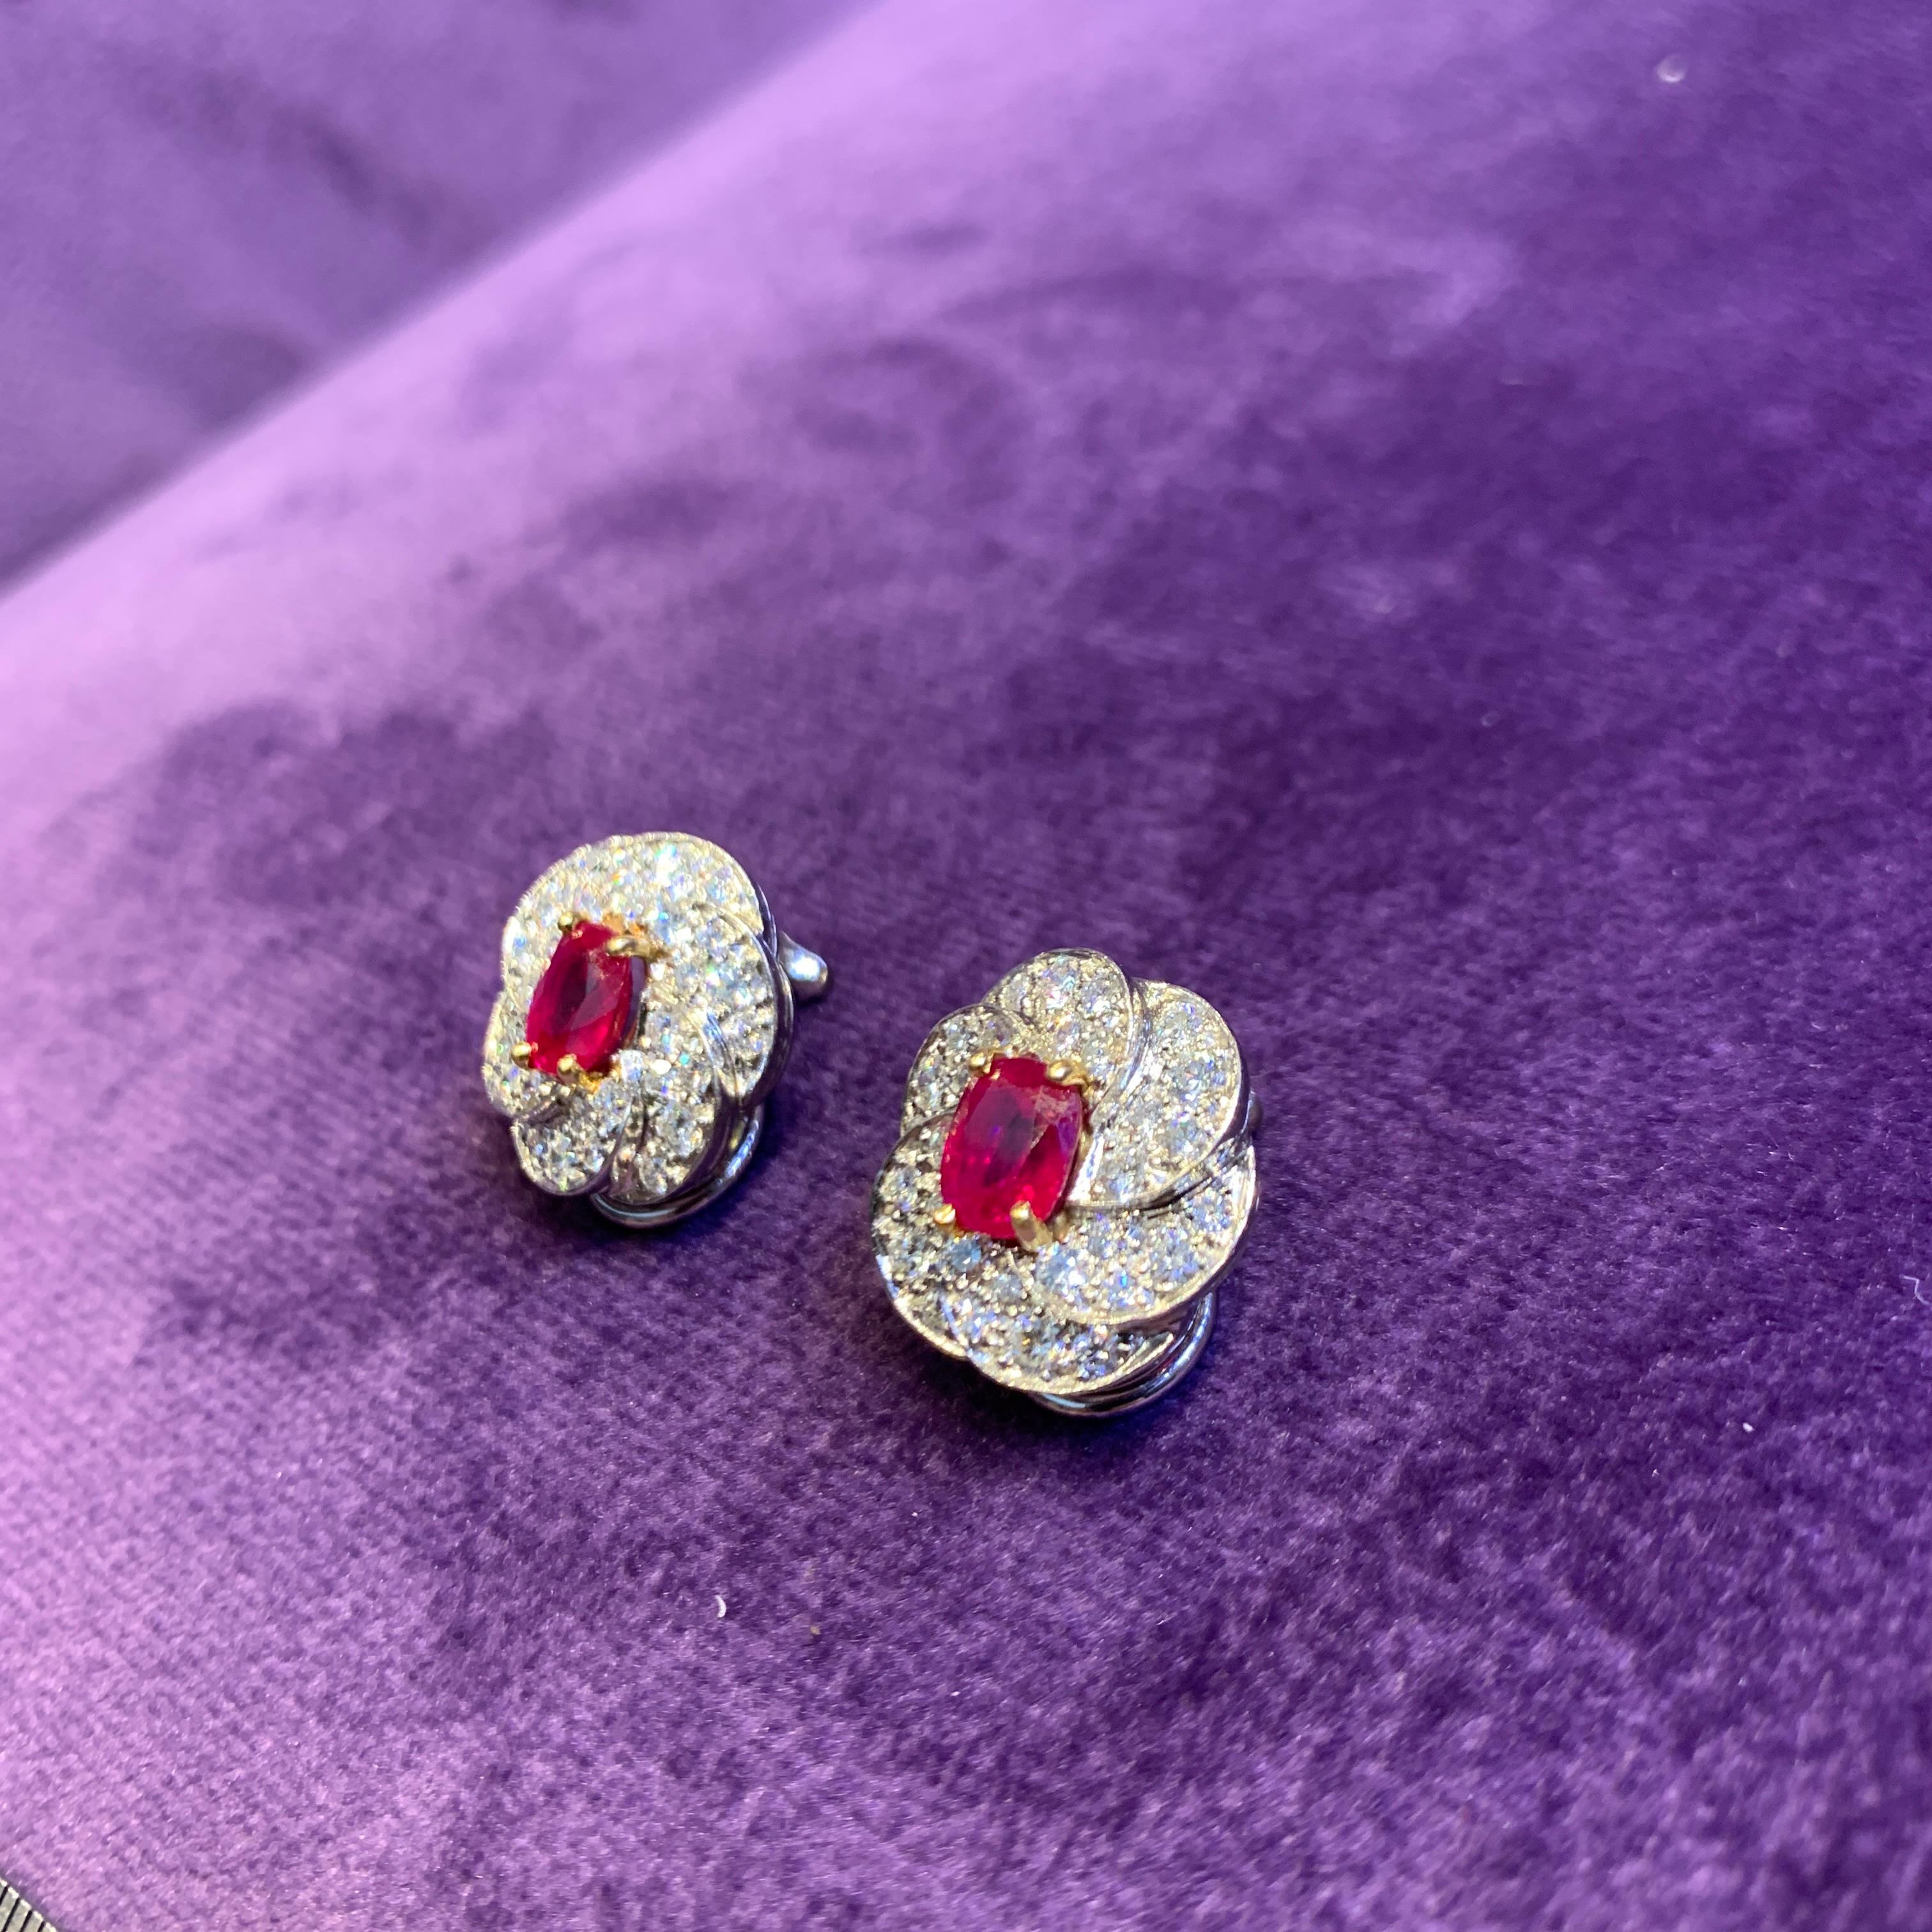 Women's Oscar Heyman Brothers Certified Burmese Ruby & Diamond Earrings For Sale